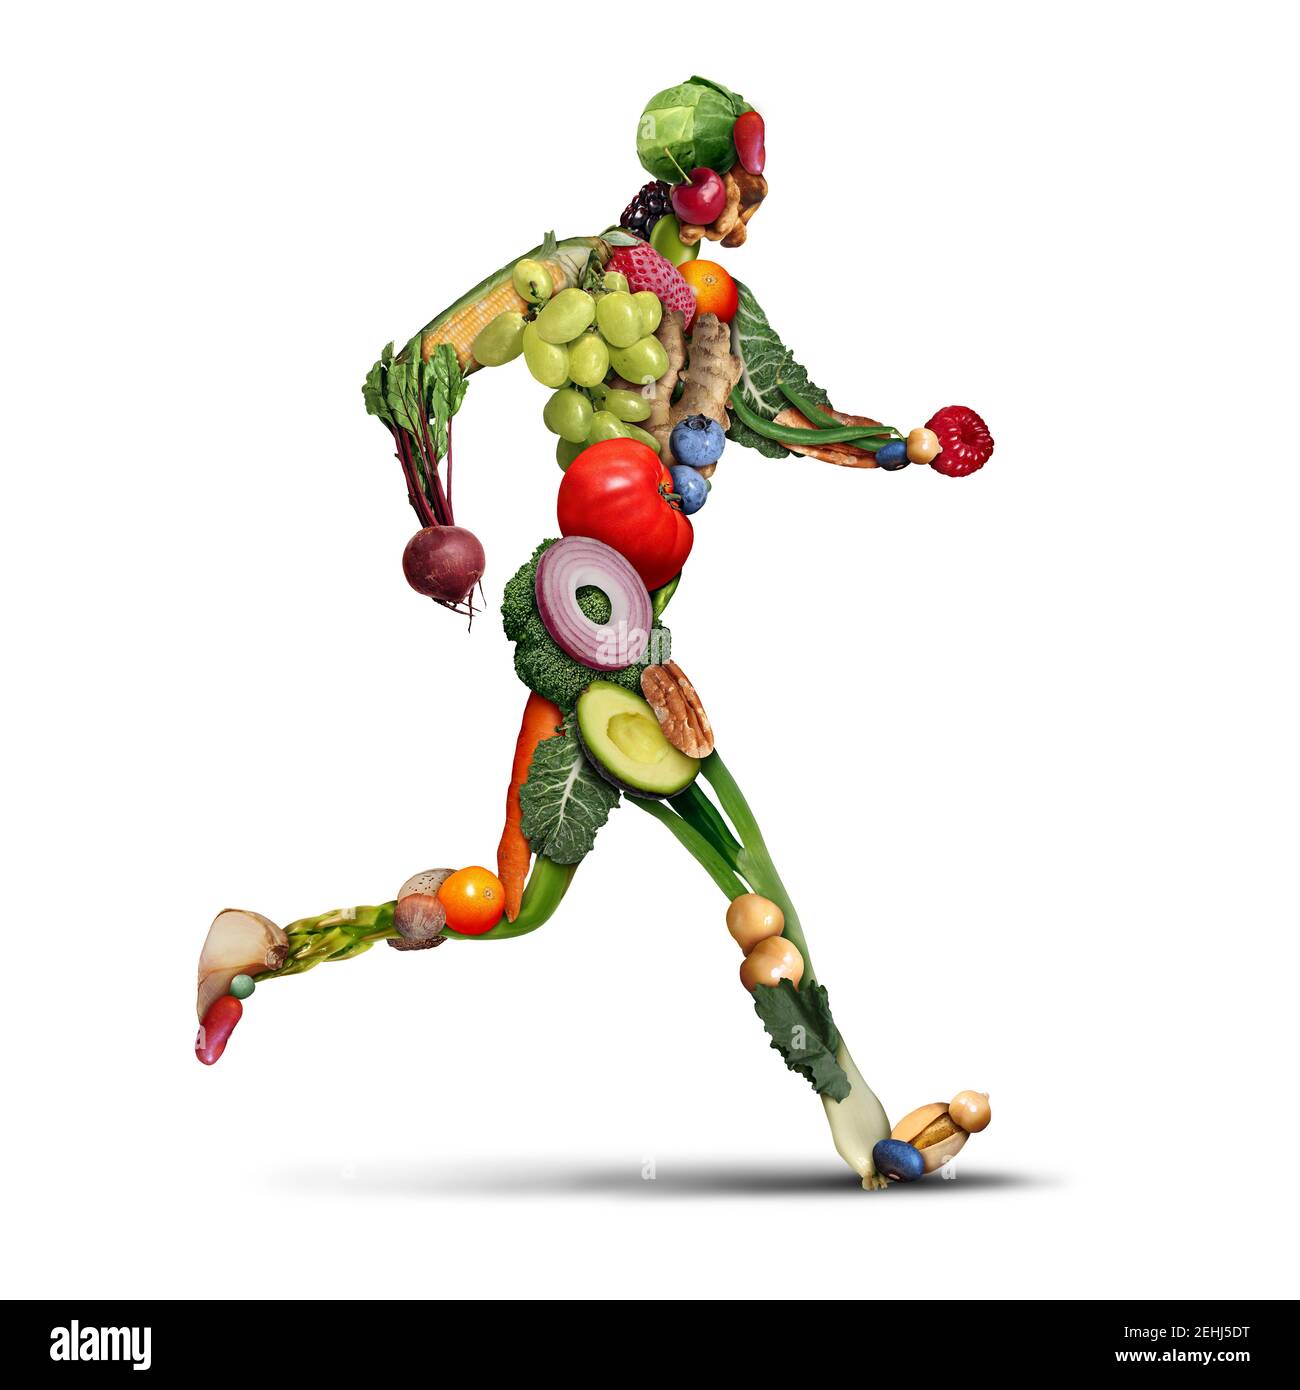 Ernährung und Fitness als gesunde Lebensweise der Bewegung und essen Obst und Gemüse, Gewicht zu verlieren, wie eine Person laufen oder joggen aus frischen. Stockfoto